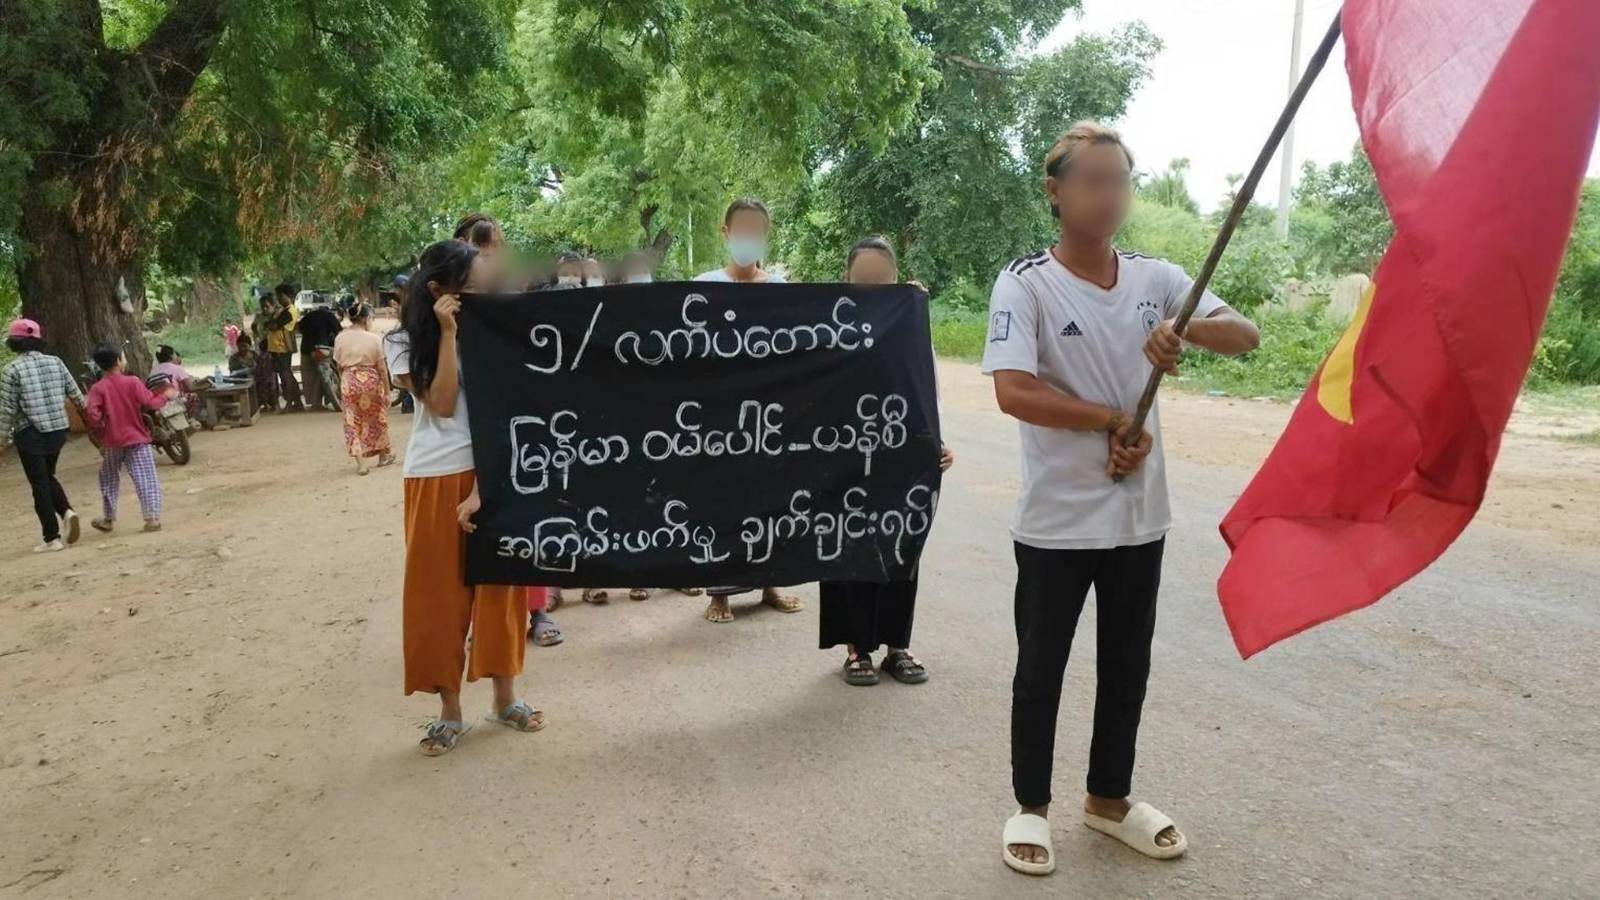 အကြမ်းဖက်မှုကို အားပေးနေတဲ့ မြန်မာဝမ်ပေါင်-ယန်စီကုမ္ပဏီကို ဆားလင်းကြီးဒေသခံတွေ ရှုံ့ချဆန္ဒပြ